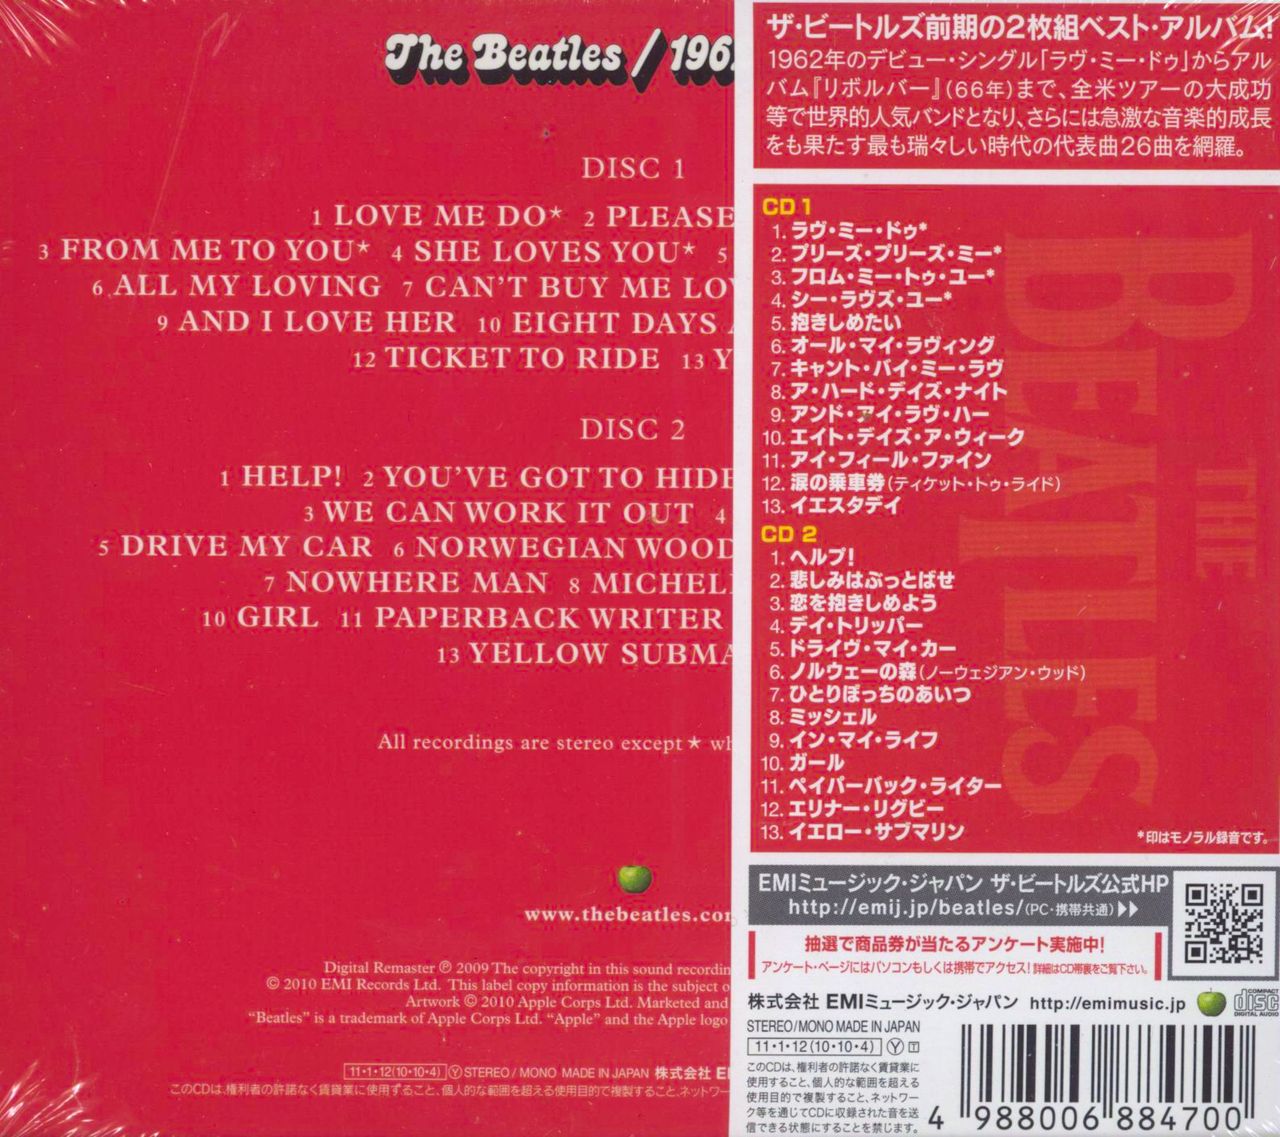 red album beatles